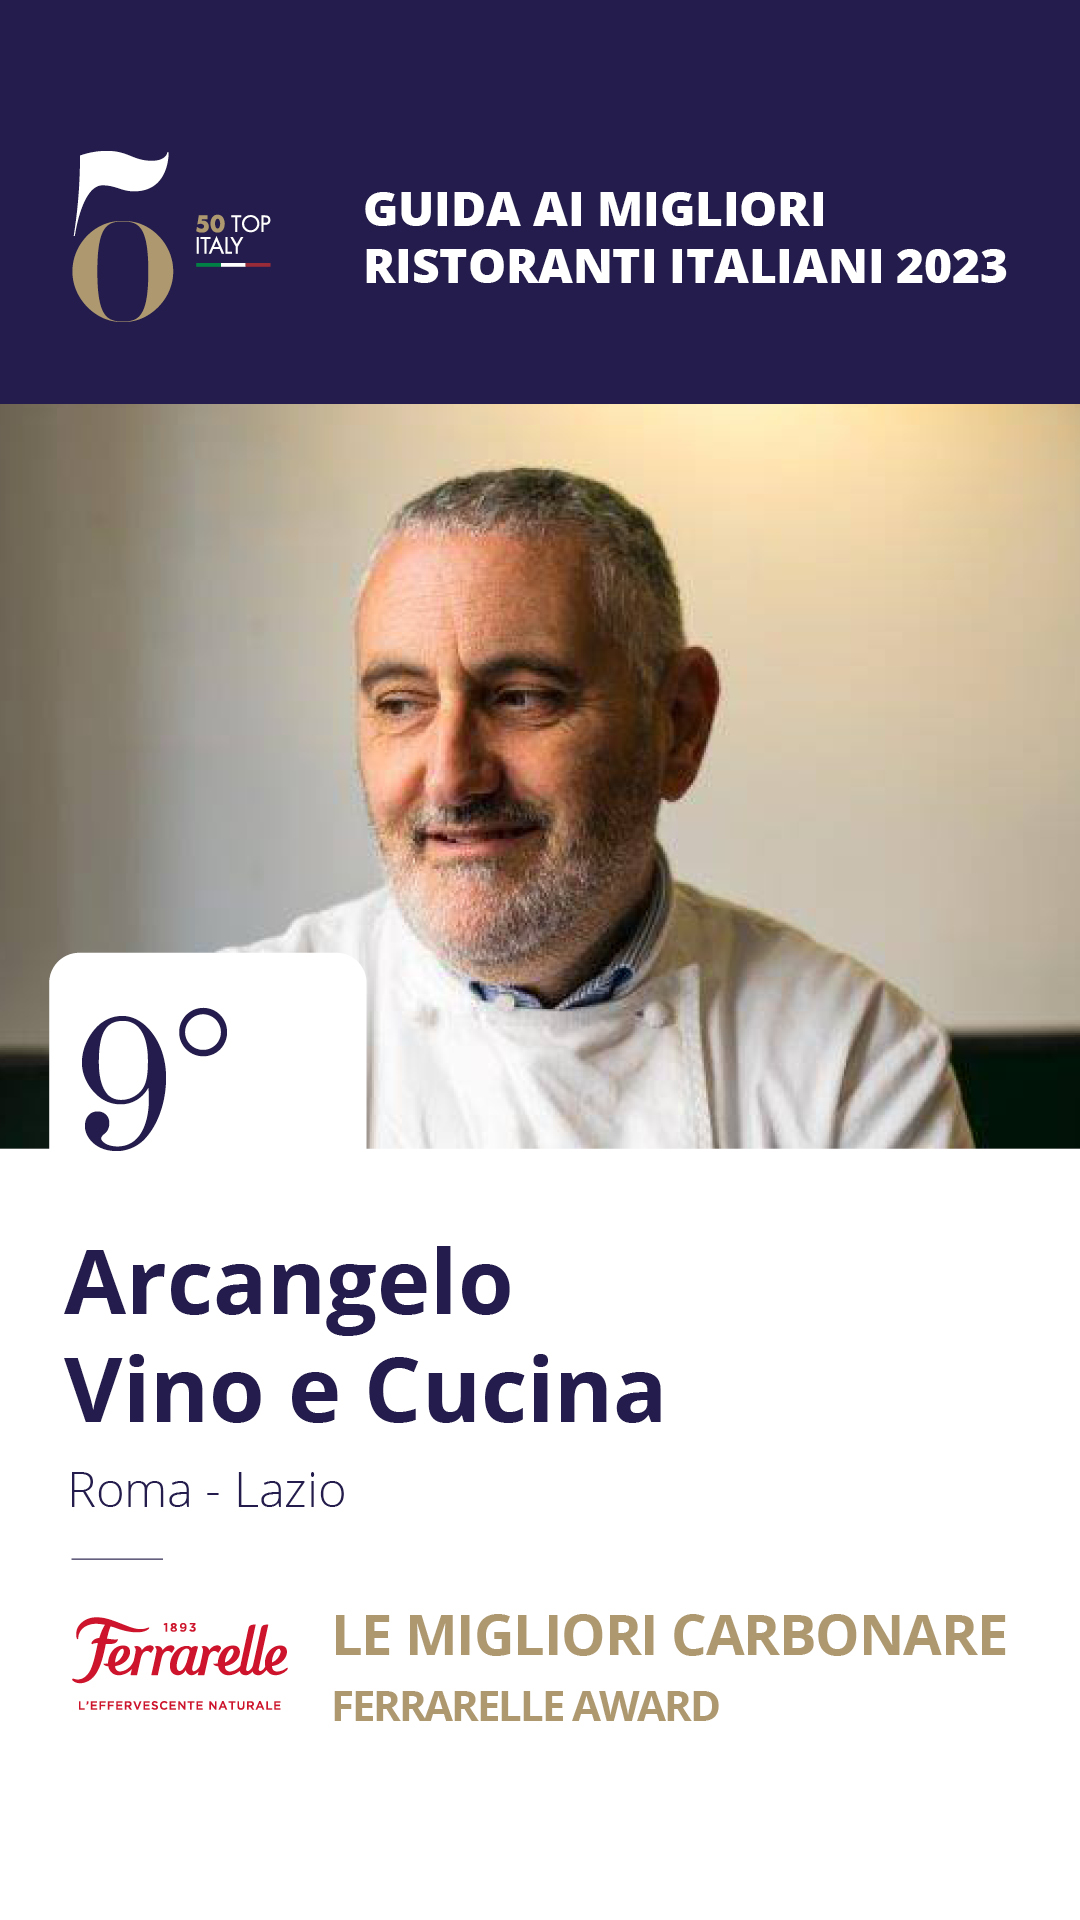 9 - Arcangelo Vino e Cucina – Roma, Lazio